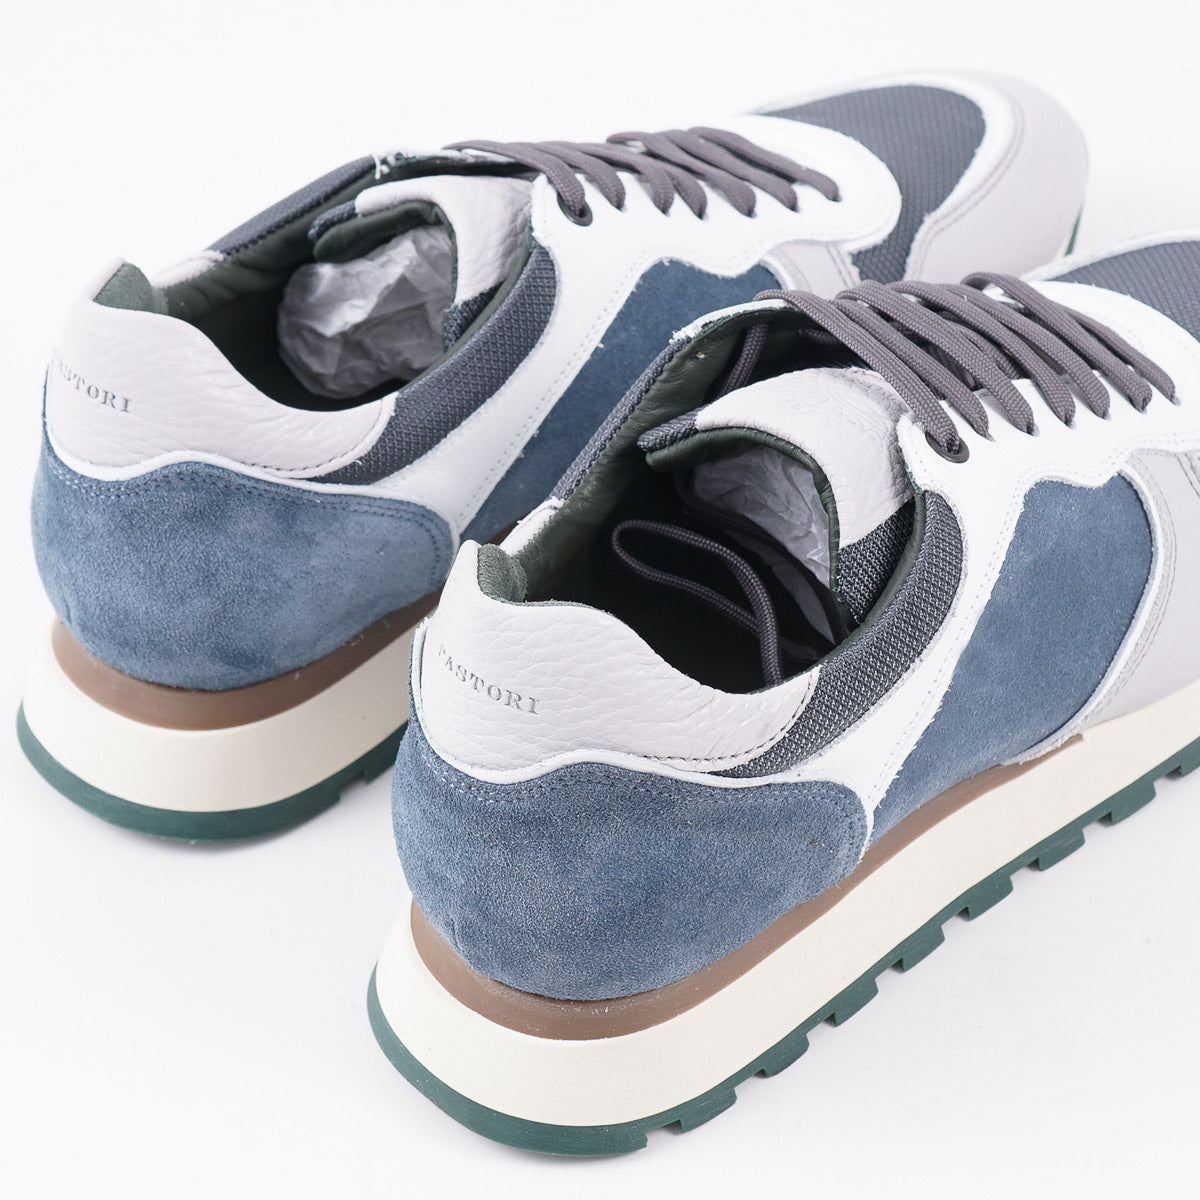 Pastori Multi-Material 'Thrax' Sneaker - Top Shelf Apparel